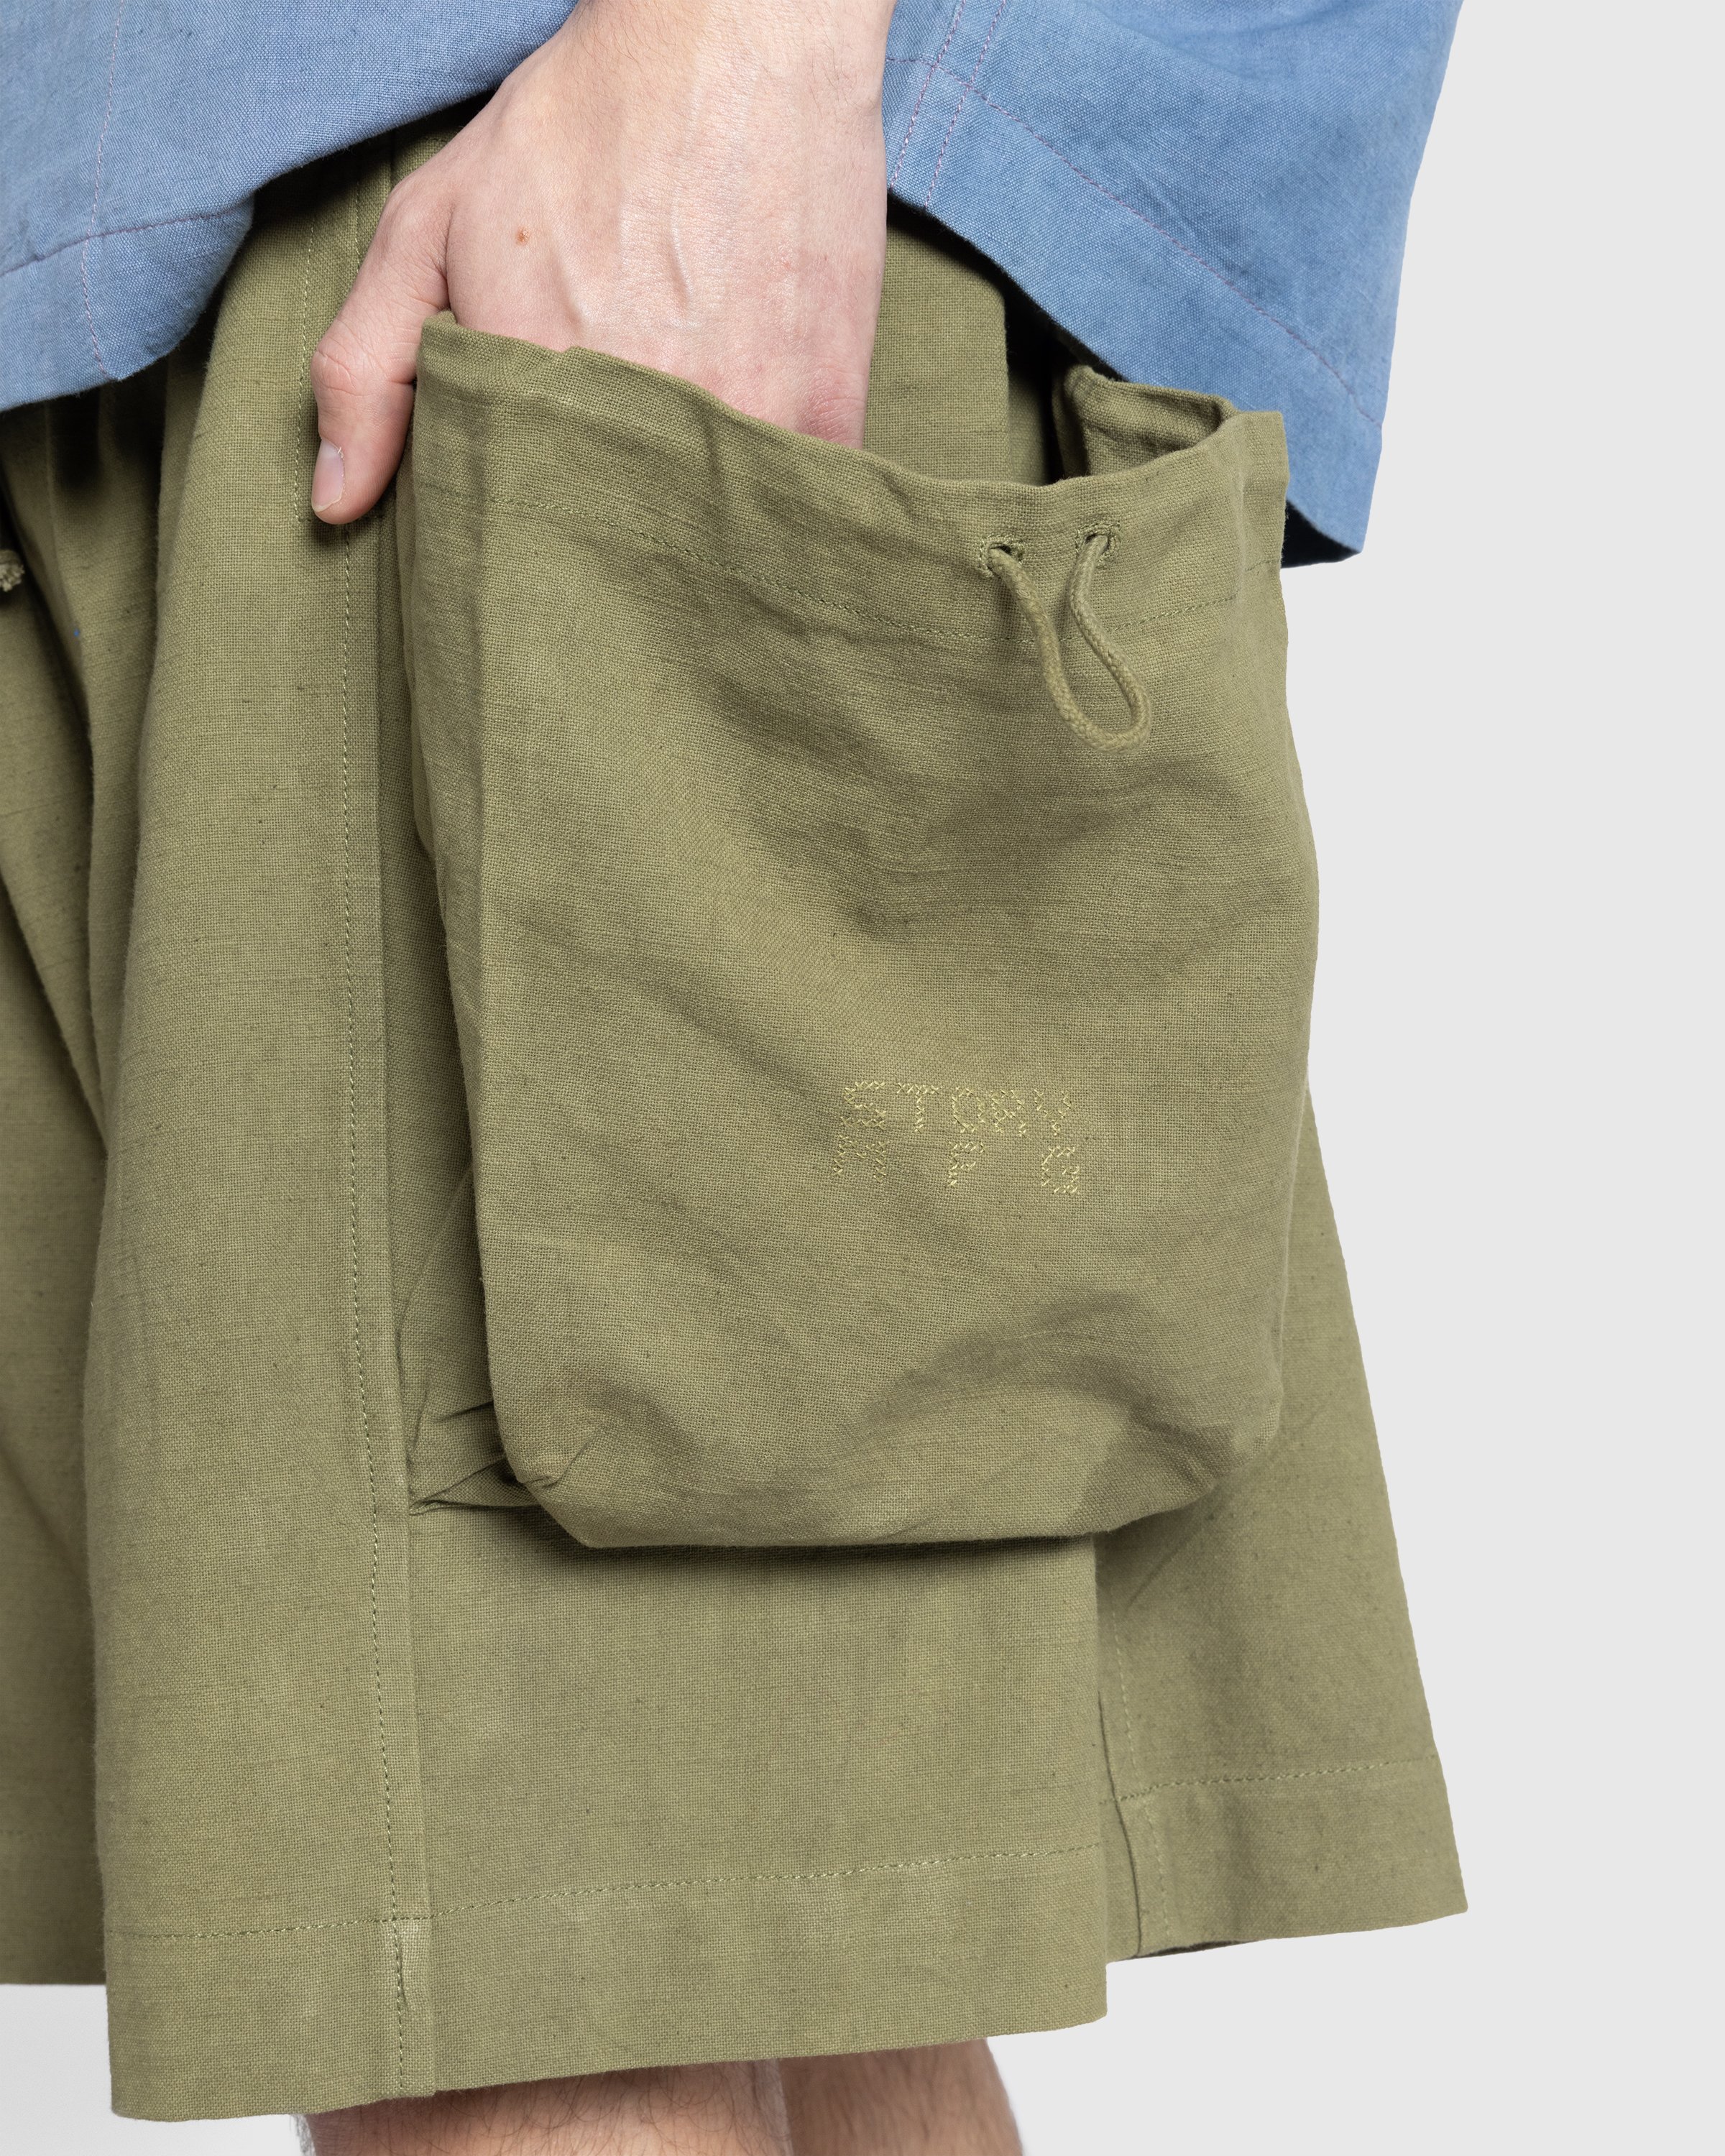 Story mfg. - Salt Shorts Olive Slub - Clothing - Green - Image 5